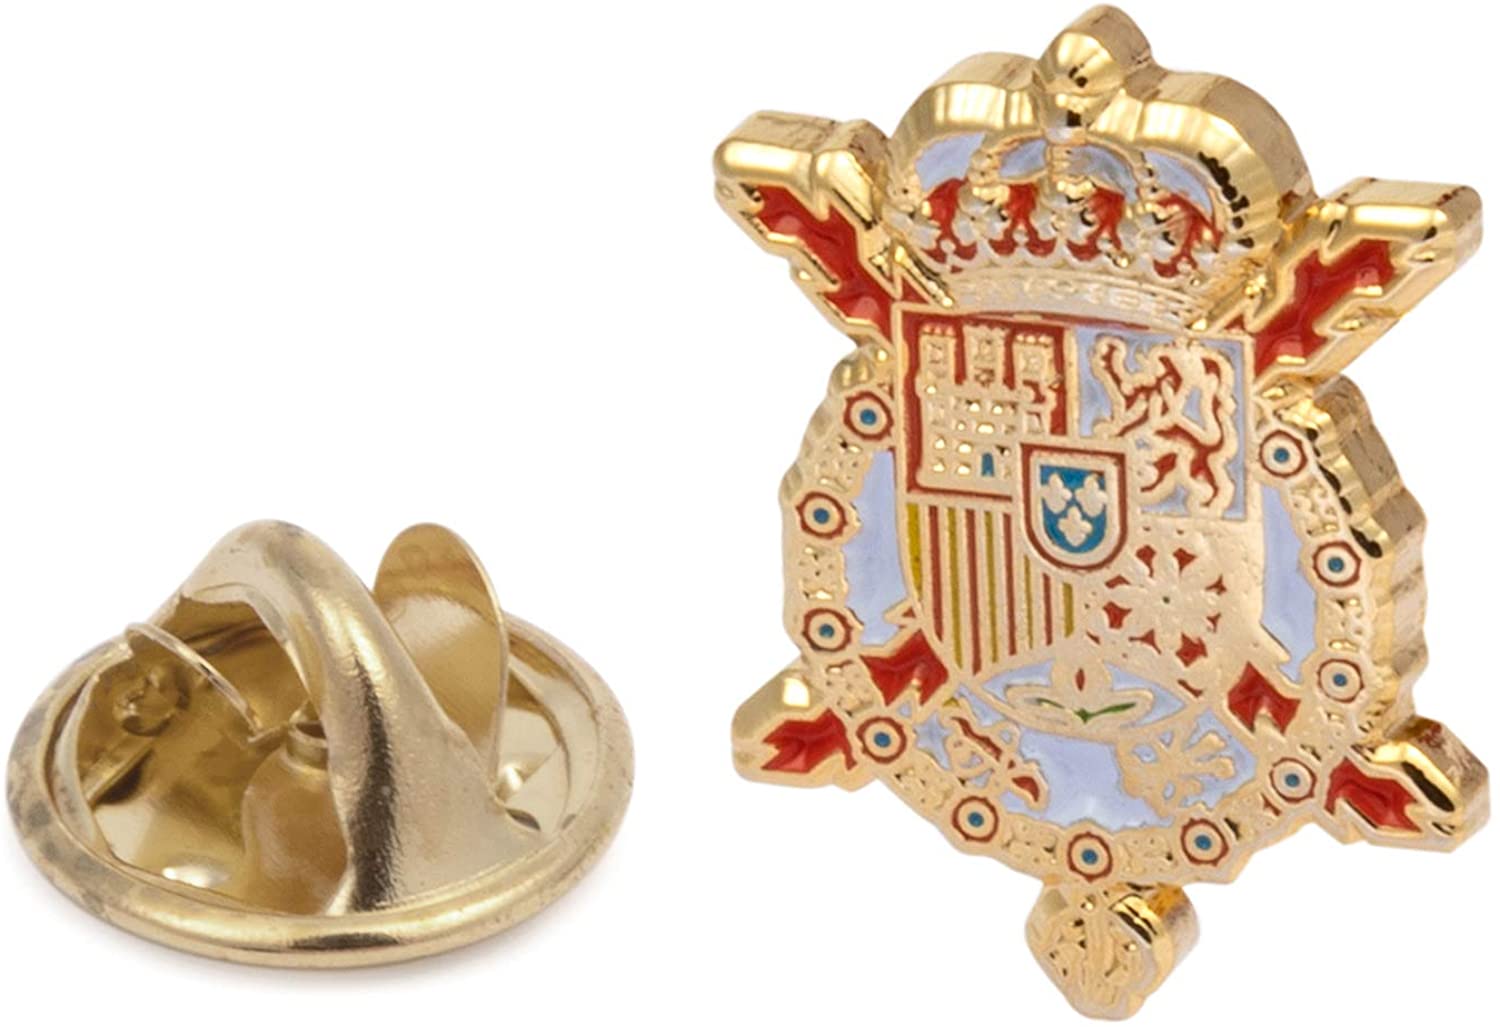 Gemelolandia | Manschettenknöpfe mit Wappen von Juan Carlos I | Geschenke für Hochzeiten, Kommunionen, Taufen und Andere Feierliche Anlässe | Für Hochzeiten, Taufen und Besondere Anlässe